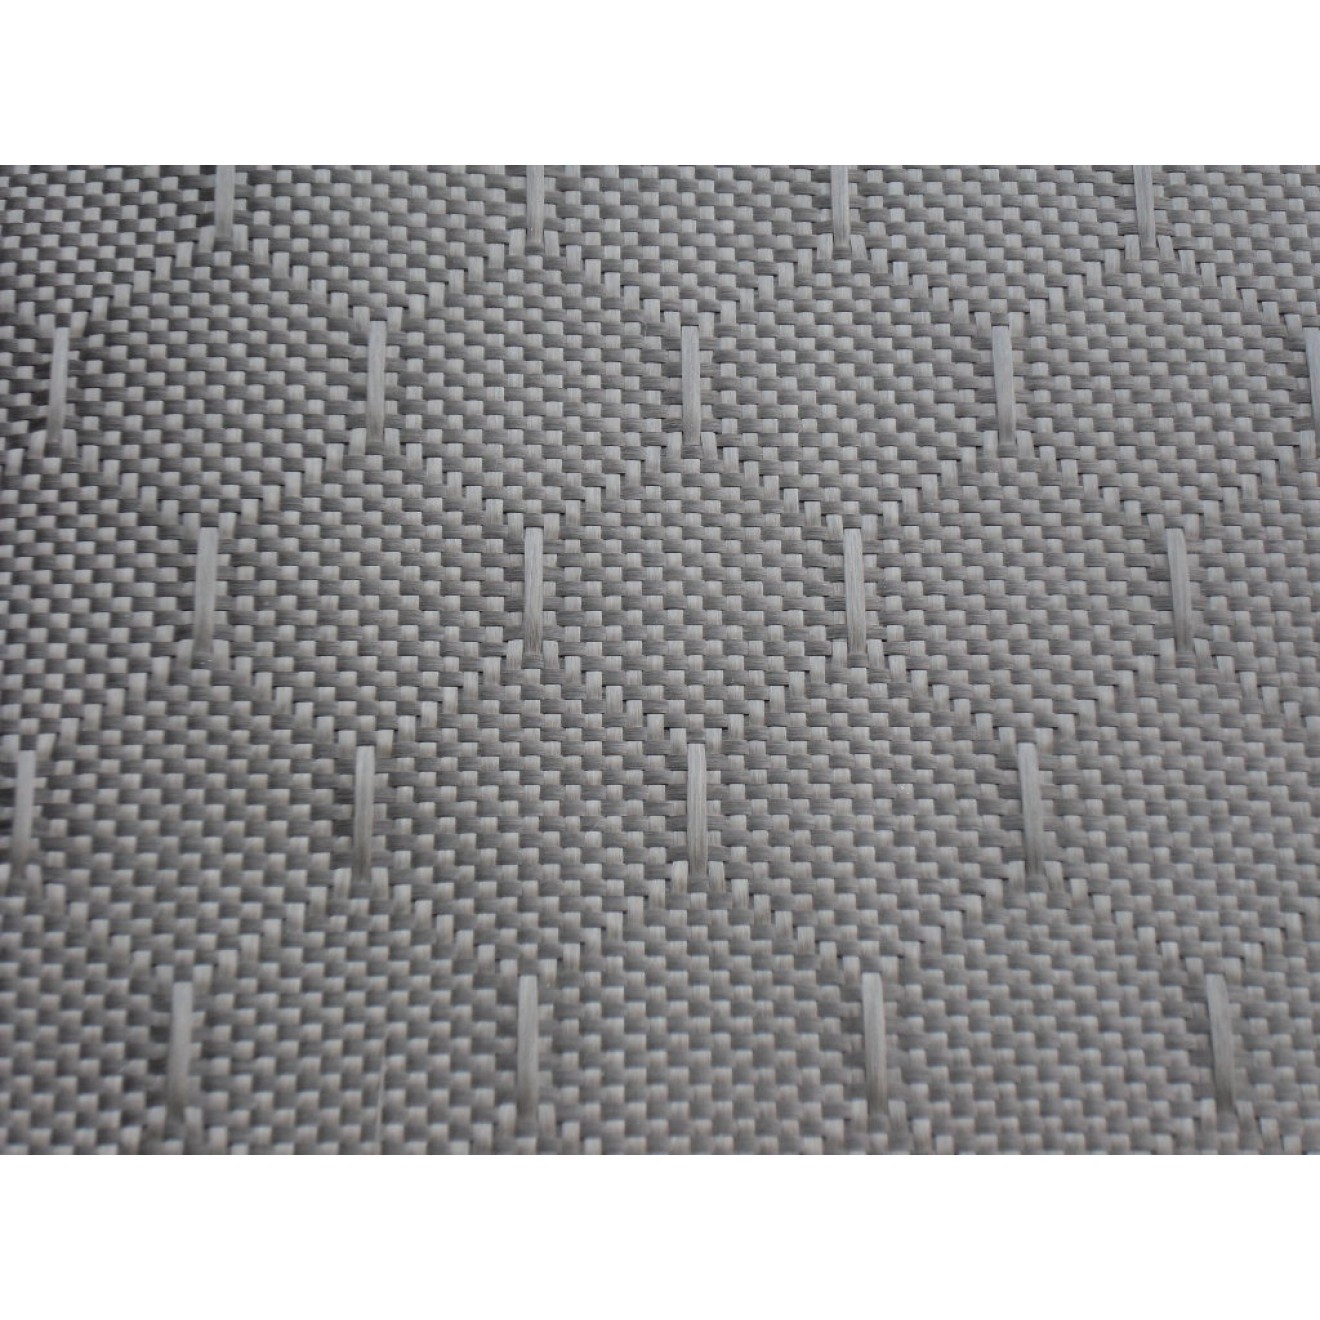 3K Tejido de fibra de carbono 245g/m², Honeycomb